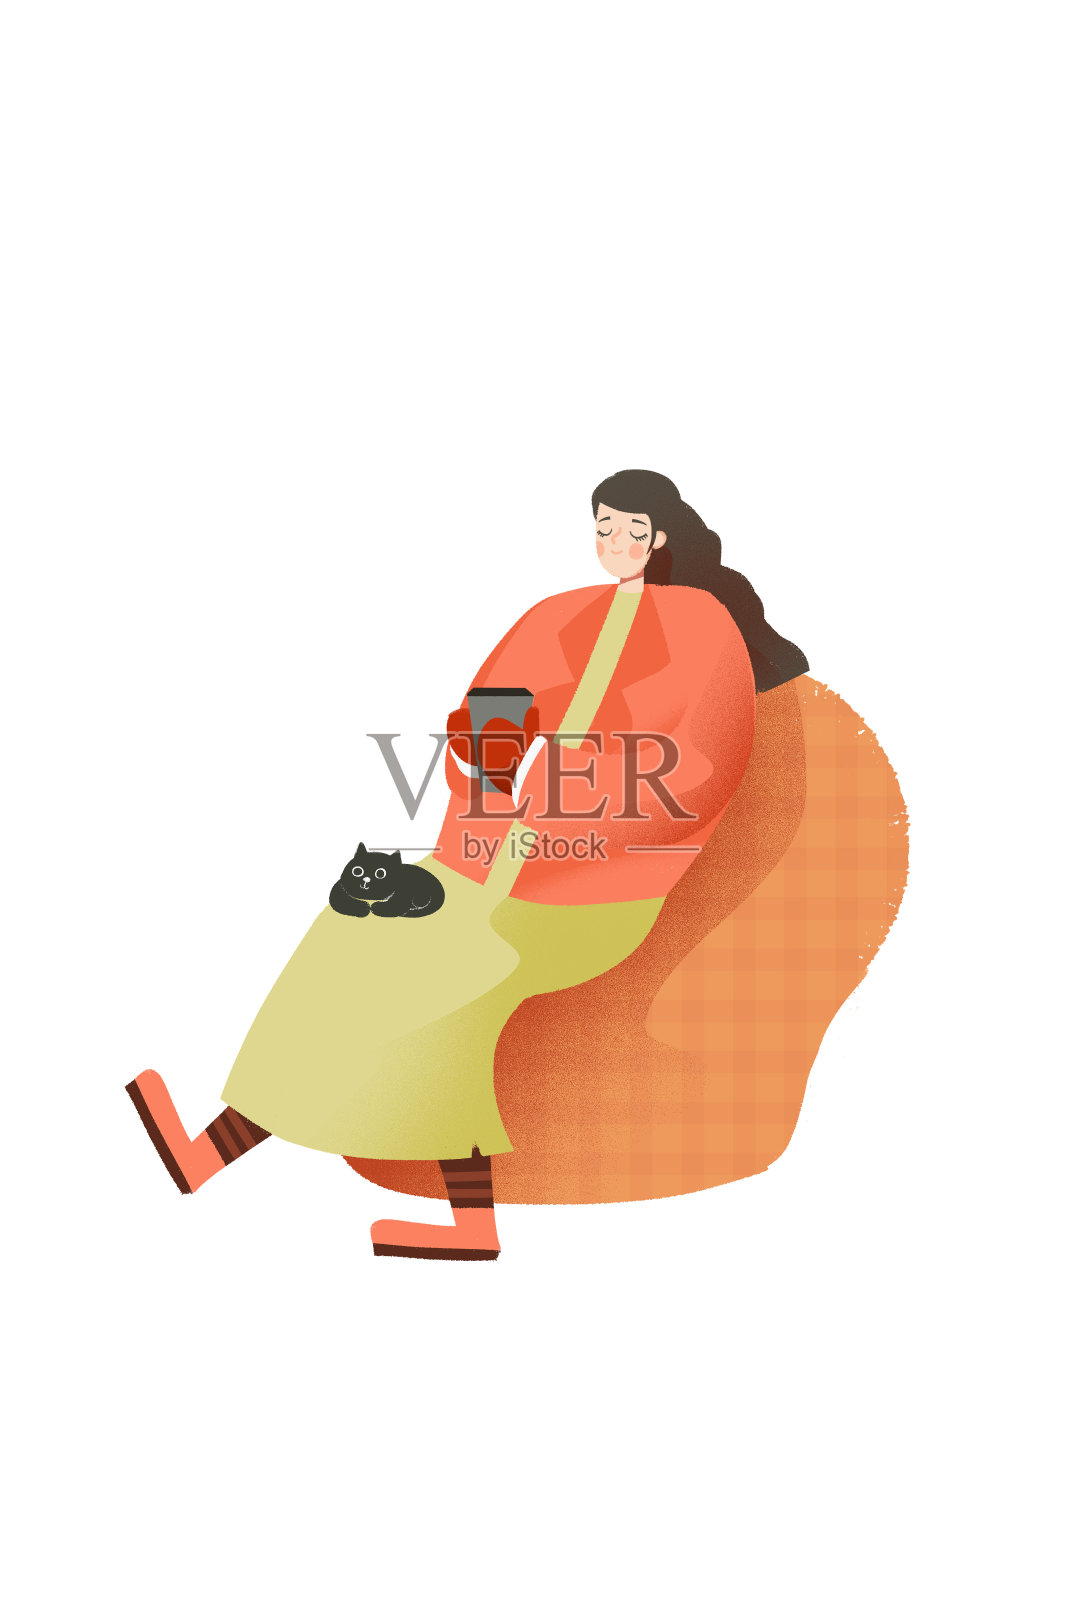 靠着茶叶鲜花上喝茶喝咖啡的美女矢量图插画素材图片下载-素材编号14544880-素材天下图库